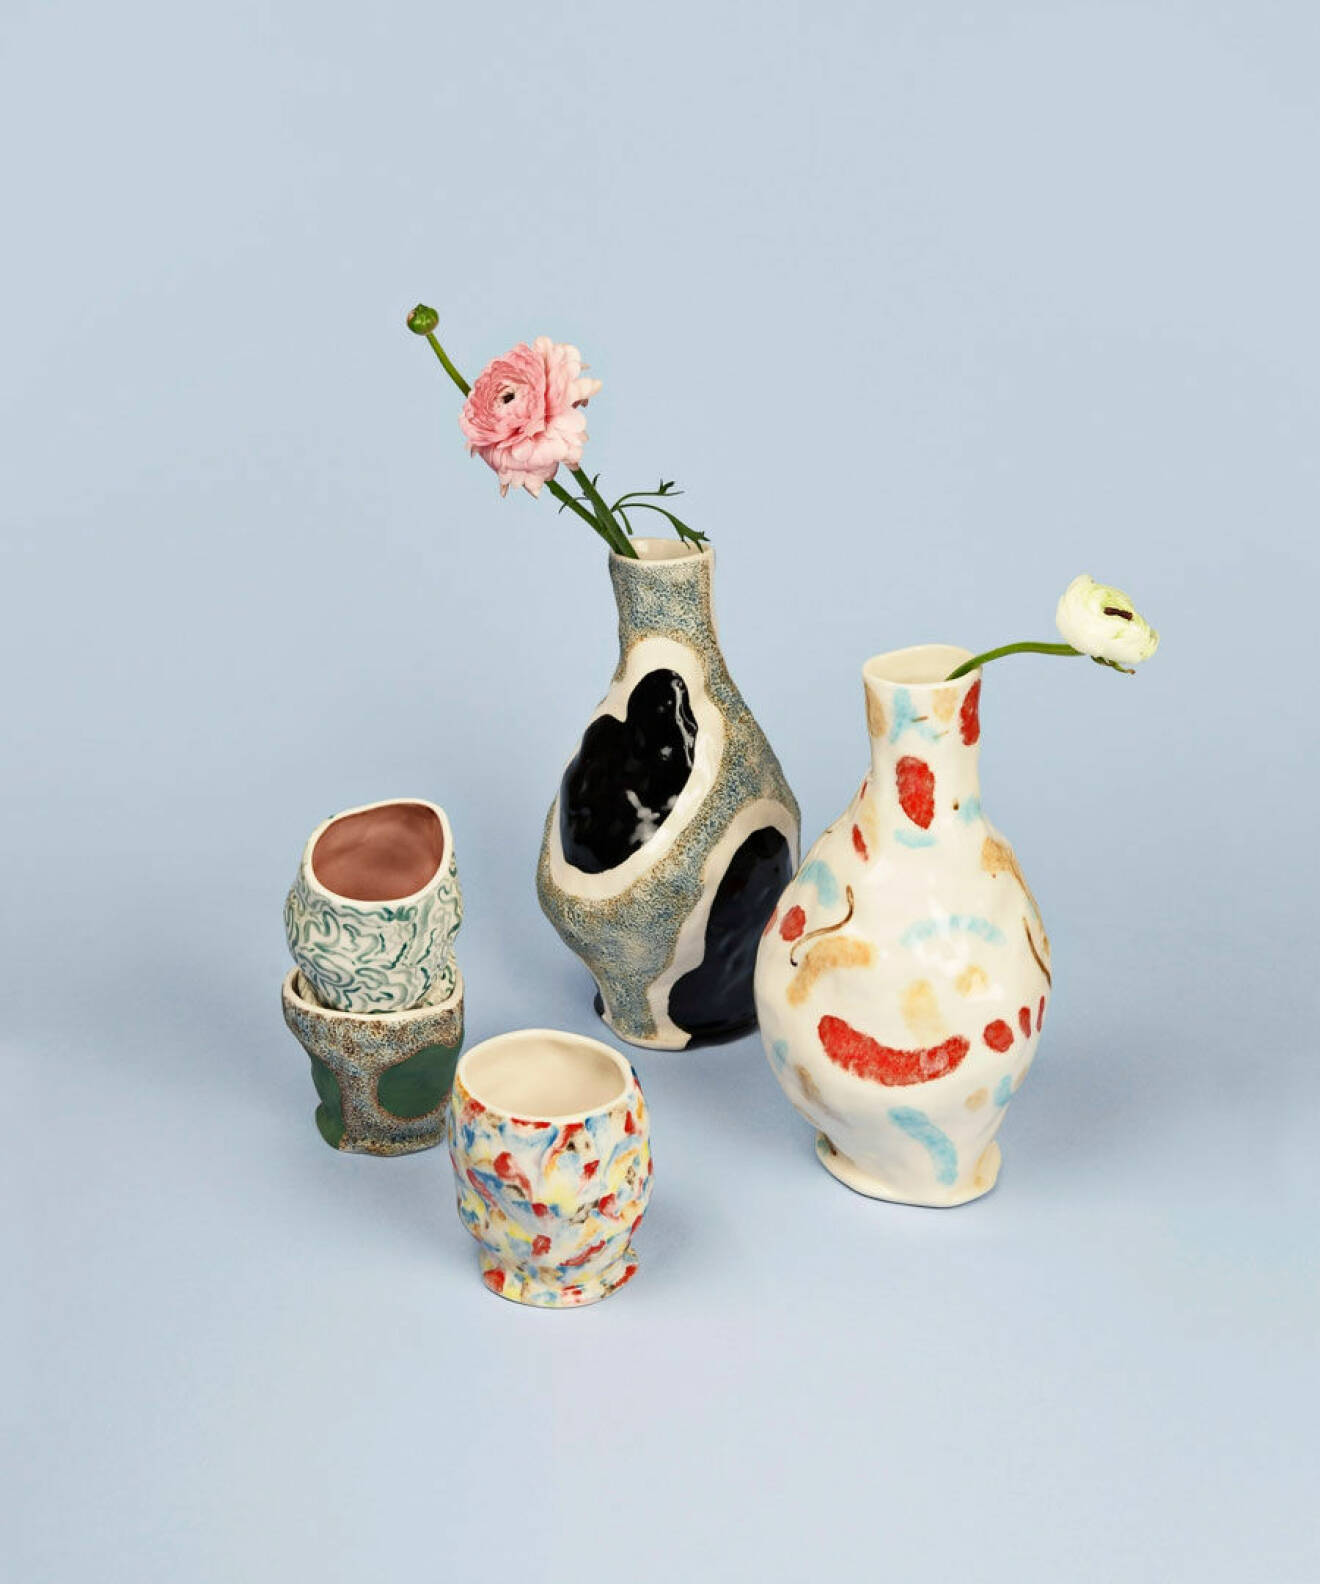 Keramik i olika färger, olika former och med olika ytor